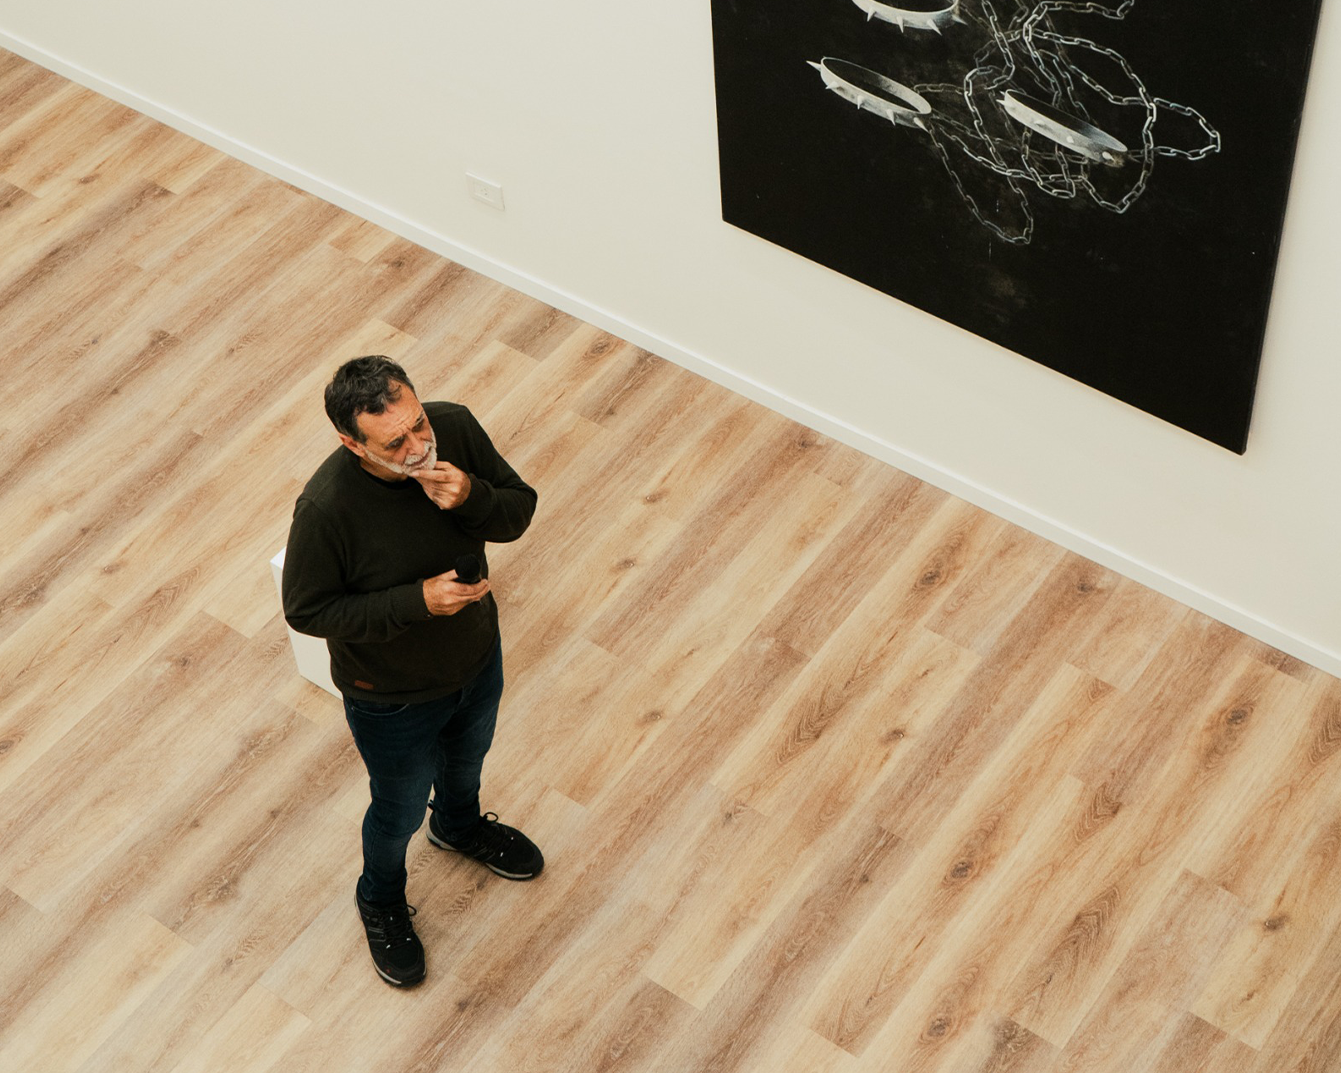 [Conversación con Daniel Garcia] Su obra, proceso creativo y mirada sobre el arte